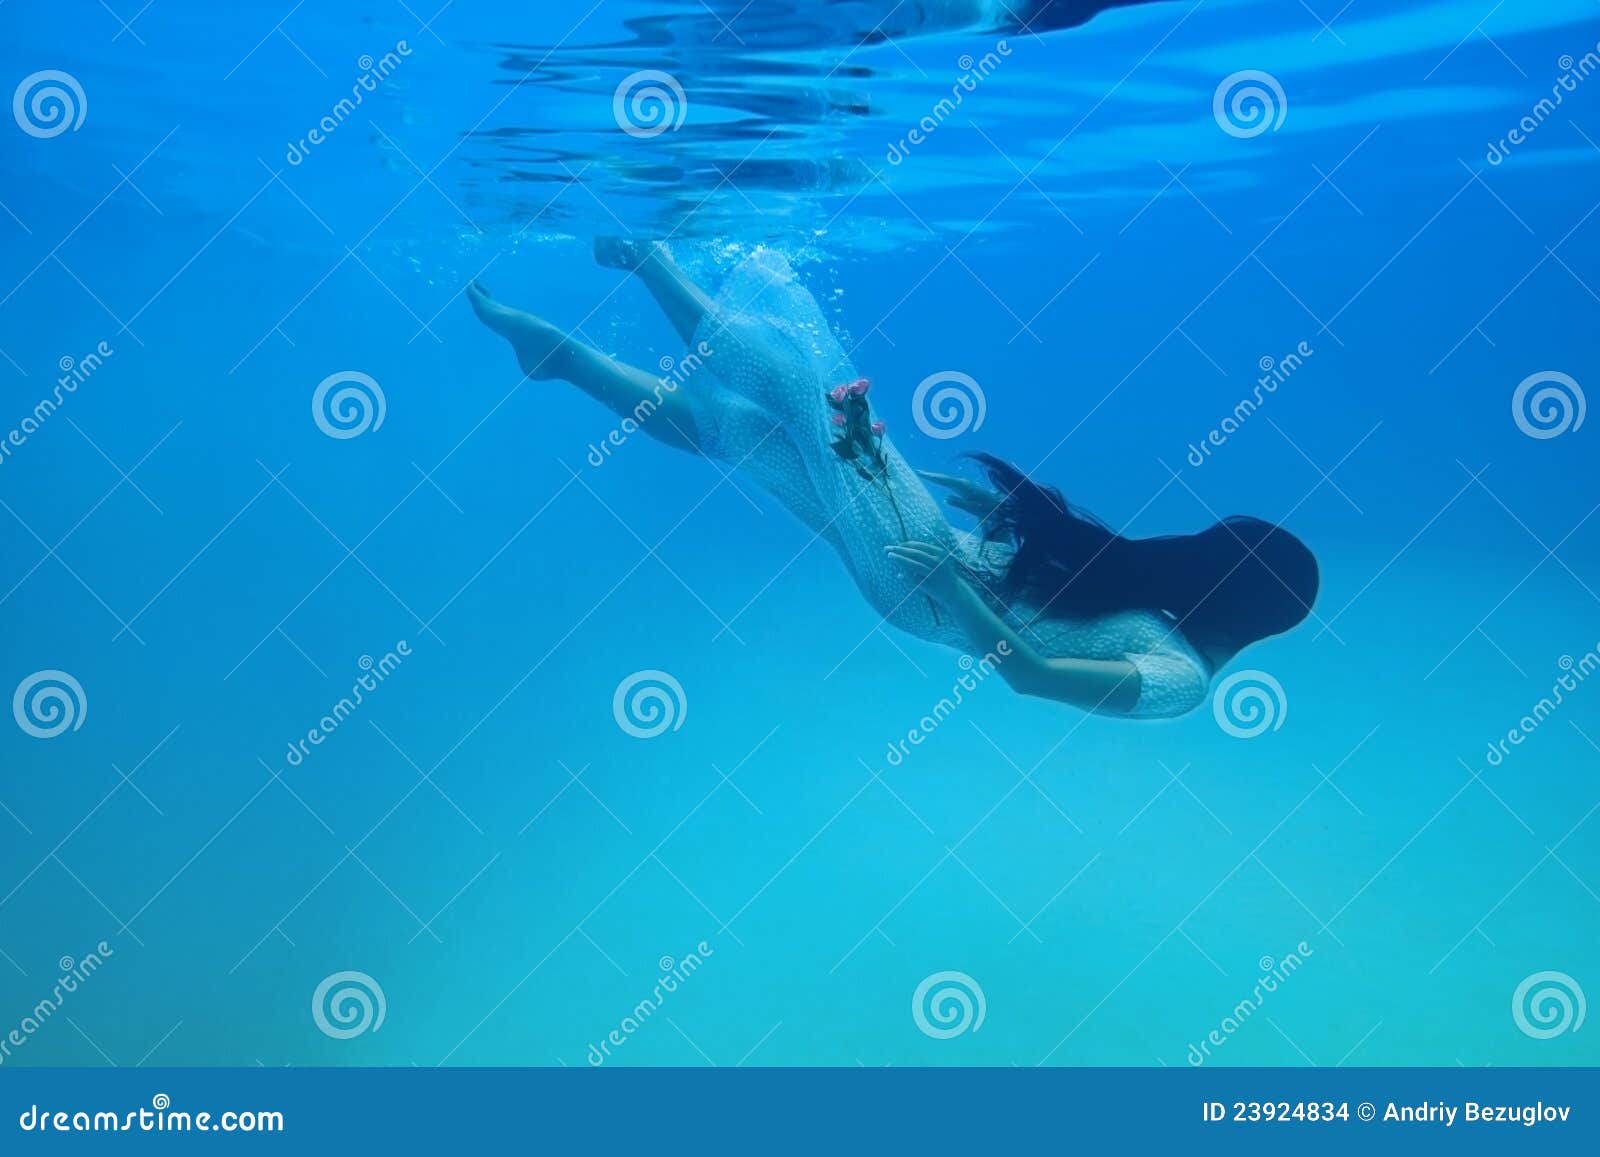 Mädchen im Wasser. Mädchen unter dem Wasser mit einer Blume